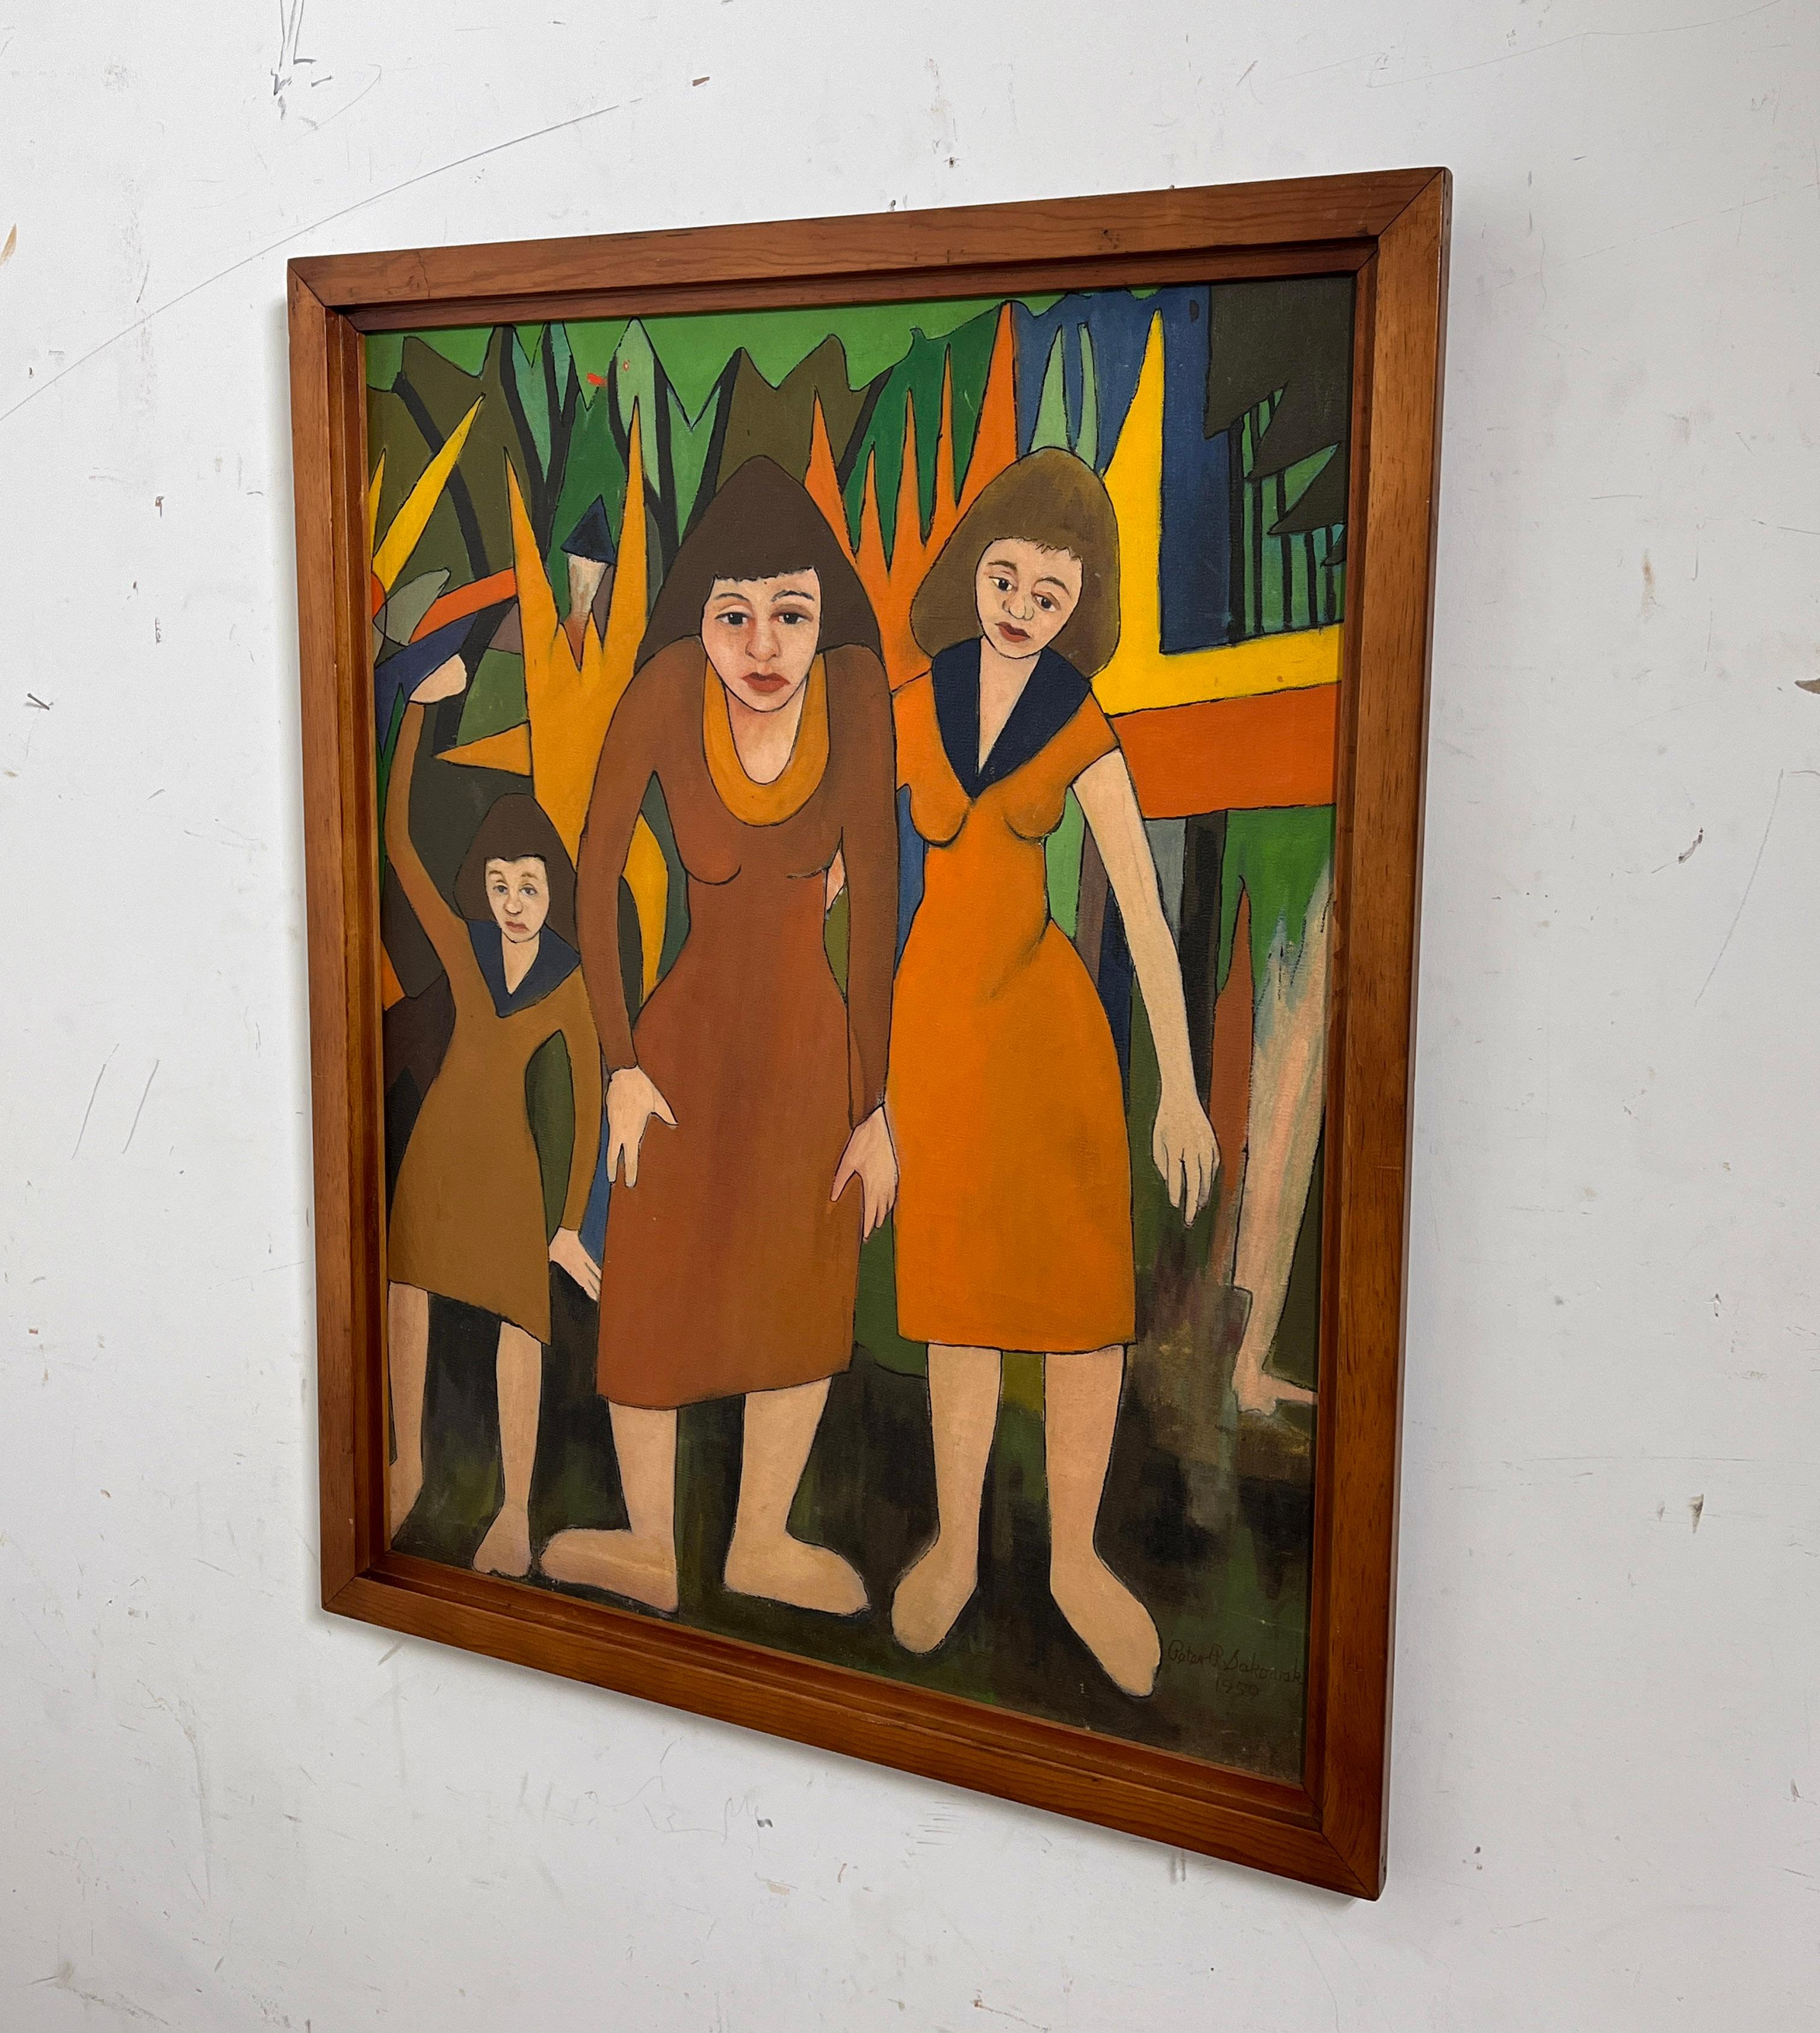 Vor kurzem haben wir eine Reihe von Gemälden aus dem Nachlass des bekannten Outsider-Künstlers Peter Paul Sakowski (1915-2000) aus Holyoke, Massachusetts, erworben. Sein Stil variiert von einer illustrativen grafischen Qualität bis hin zu einem eher